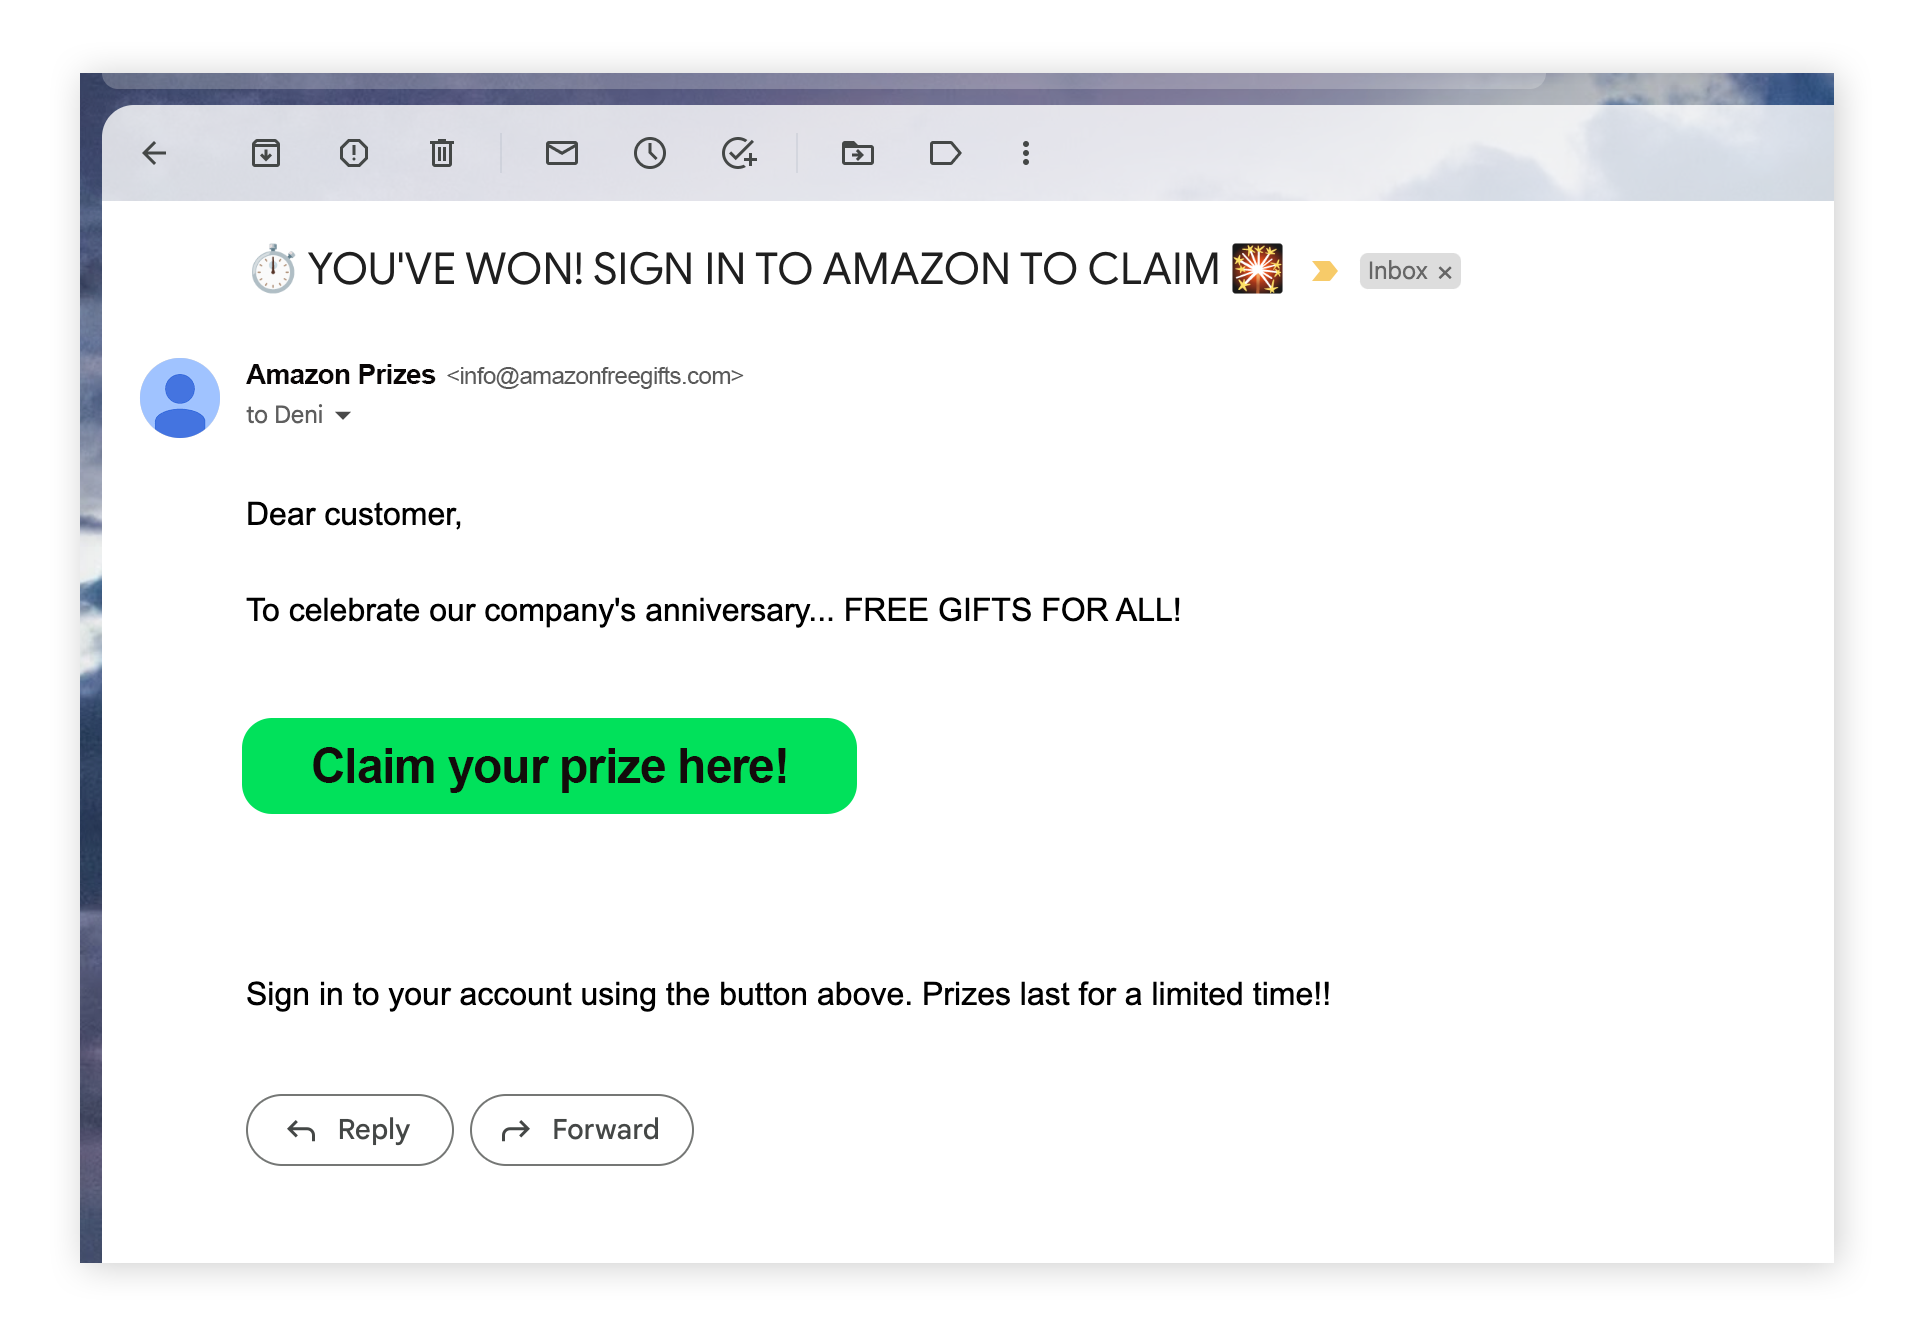 Les escroqueries par phishing Amazon vous promettent généralement que vous avez gagné un prix pour vous inciter à cliquer sur un lien malveillant.